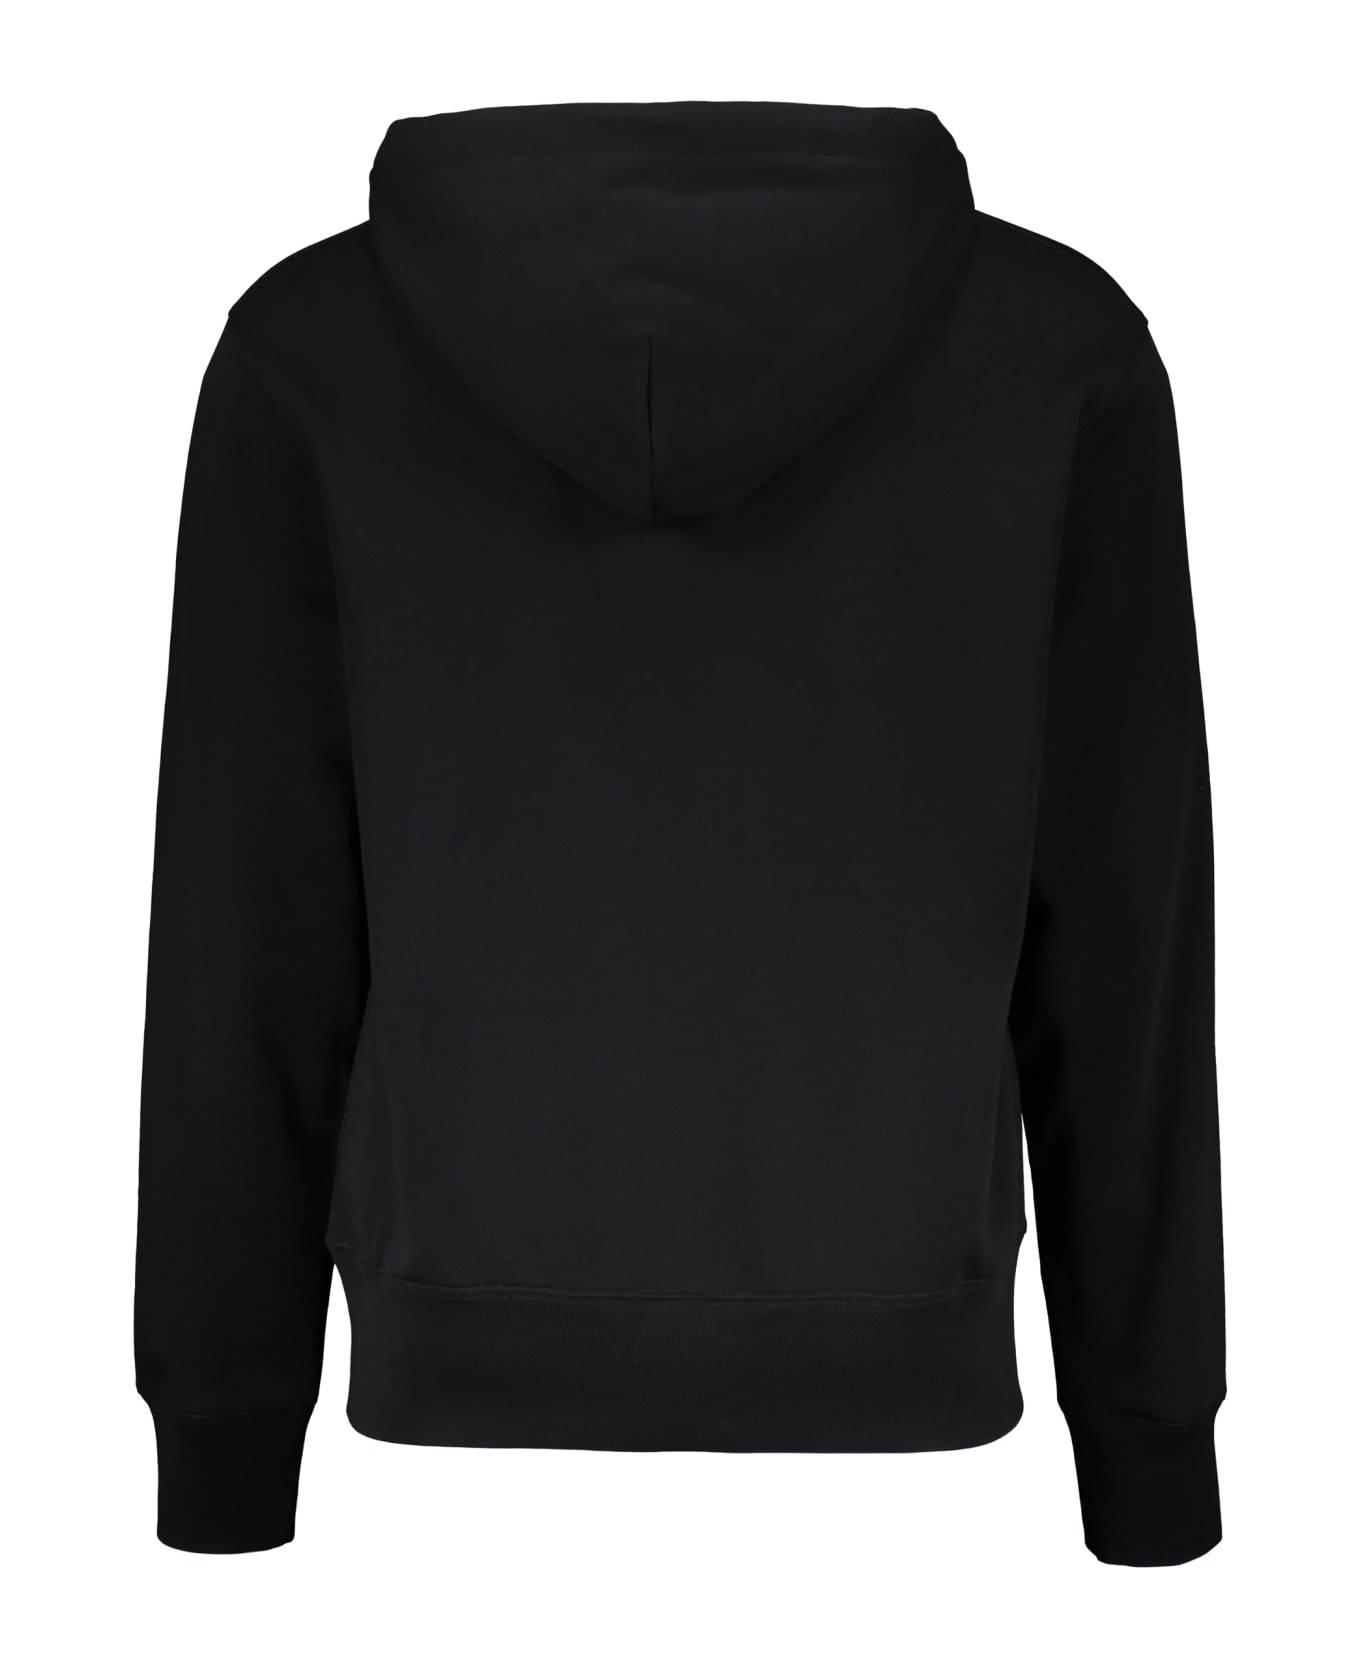 Acne Studios Hooded Sweatshirt - black フリース